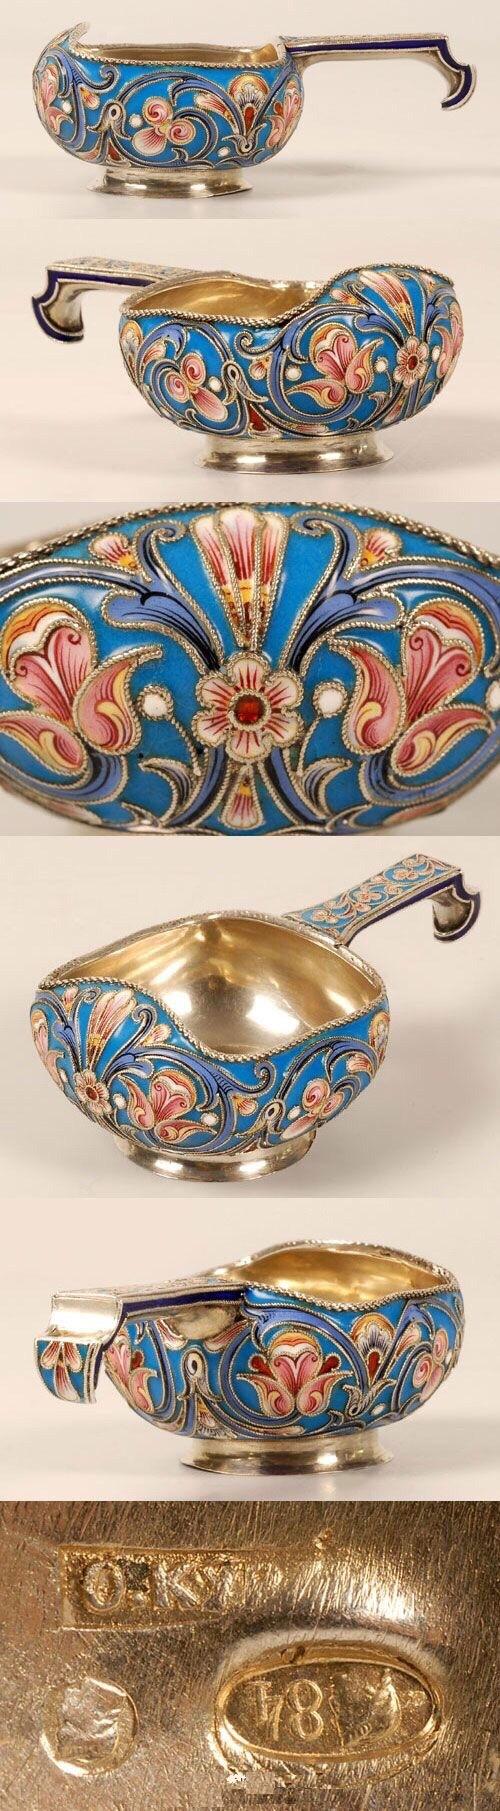 19世纪末俄国纯银镀金掐丝珐琅餐具。